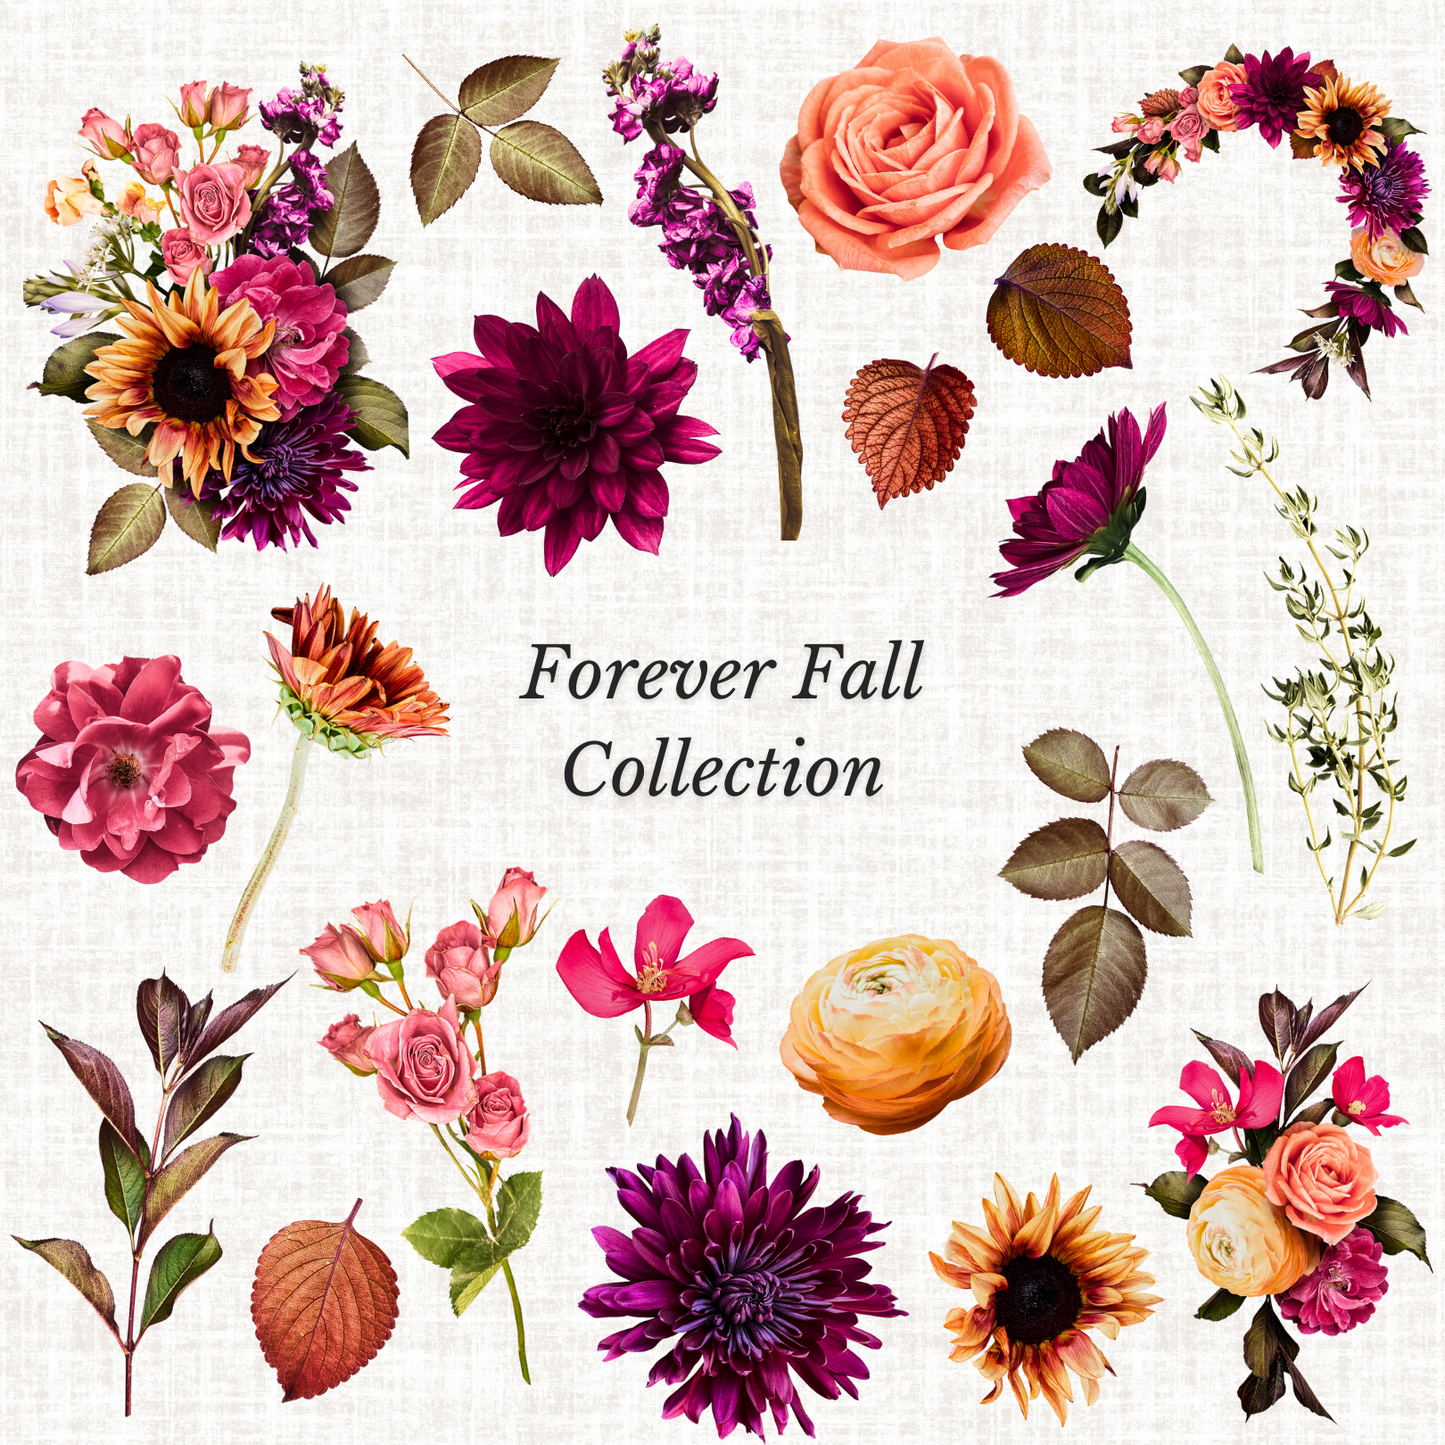 "Artful Fall 2022" Cover & Sticker Pack